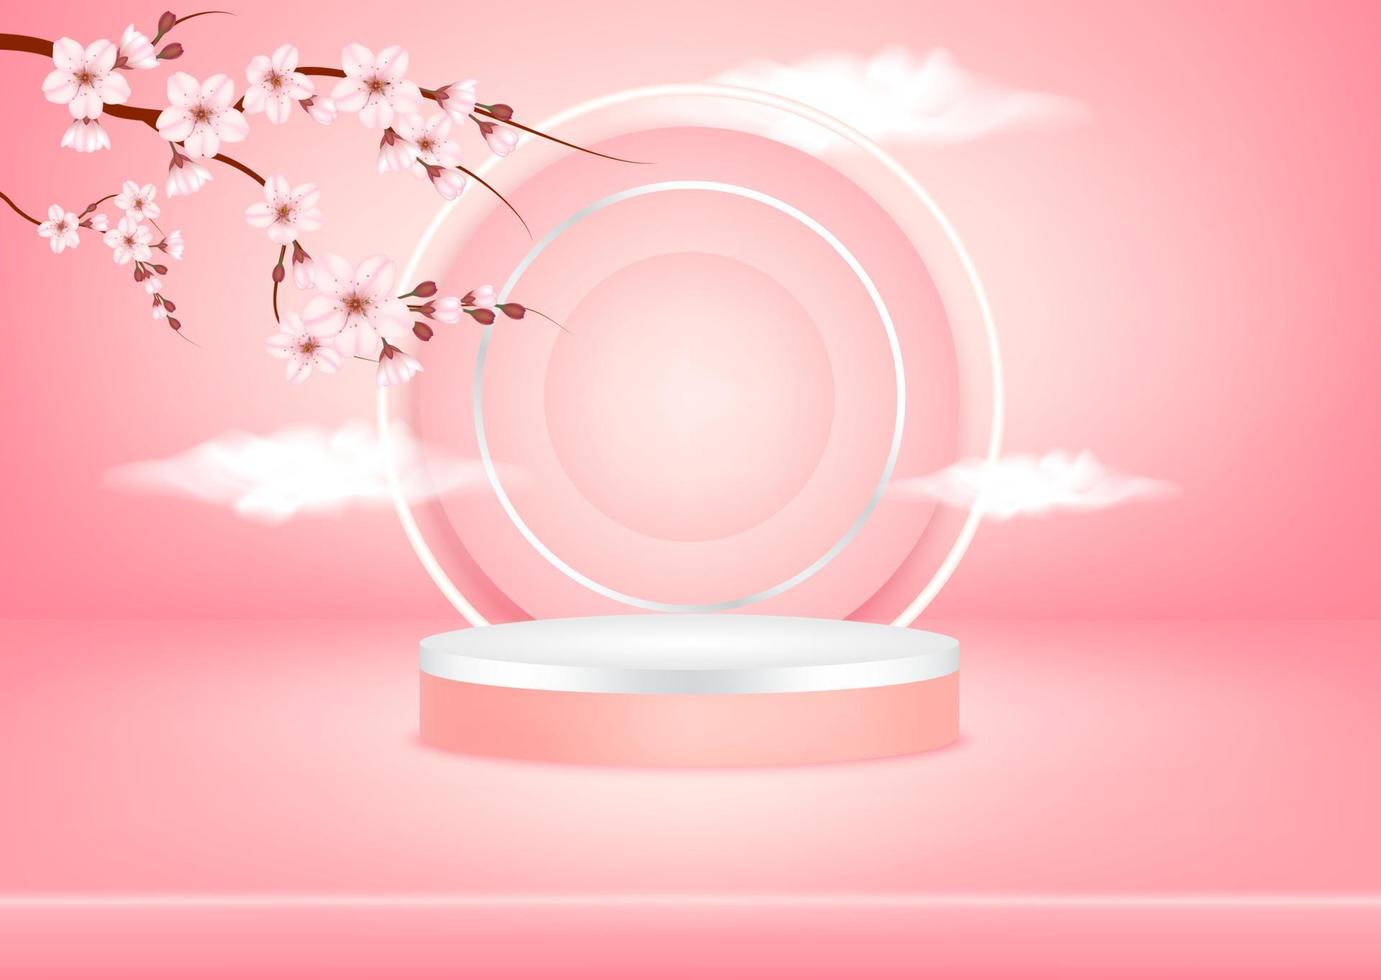 abstrakte rosa studiohintergrundpodiumszene mit blattgeometrischer plattform, spiegel, der die himmelwolken und sakura für kosmetische produkte widerspiegelt. 3D-Vektor-Illustration. Kunst minimales Stilkonzept. vektor